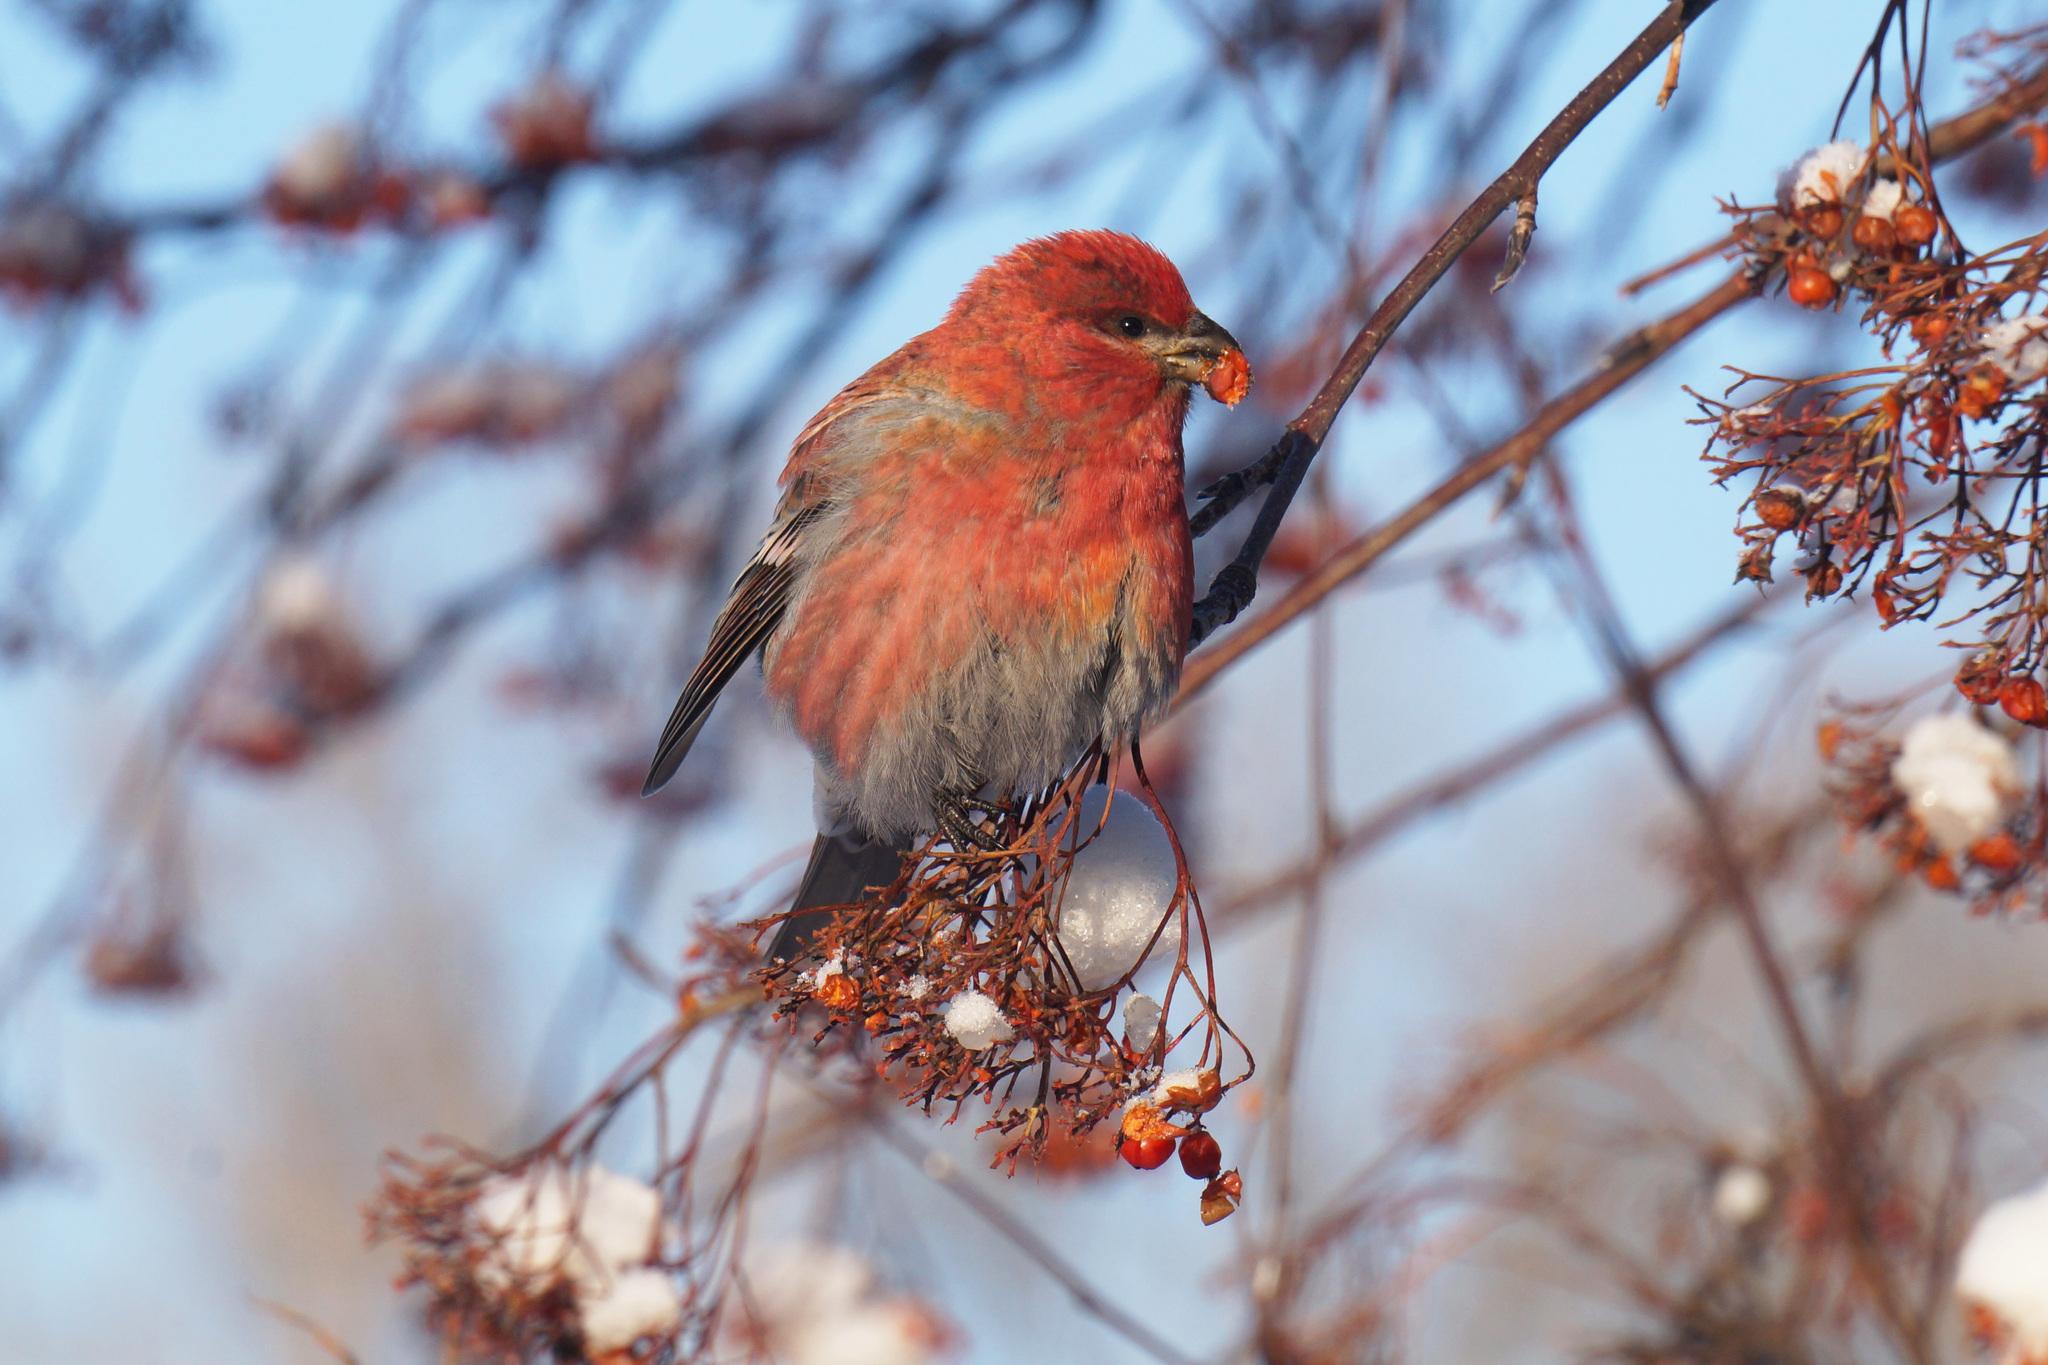 Фотографии птиц зимой: выберите подходящий формат | Птицы зимой Фото  №532510 скачать